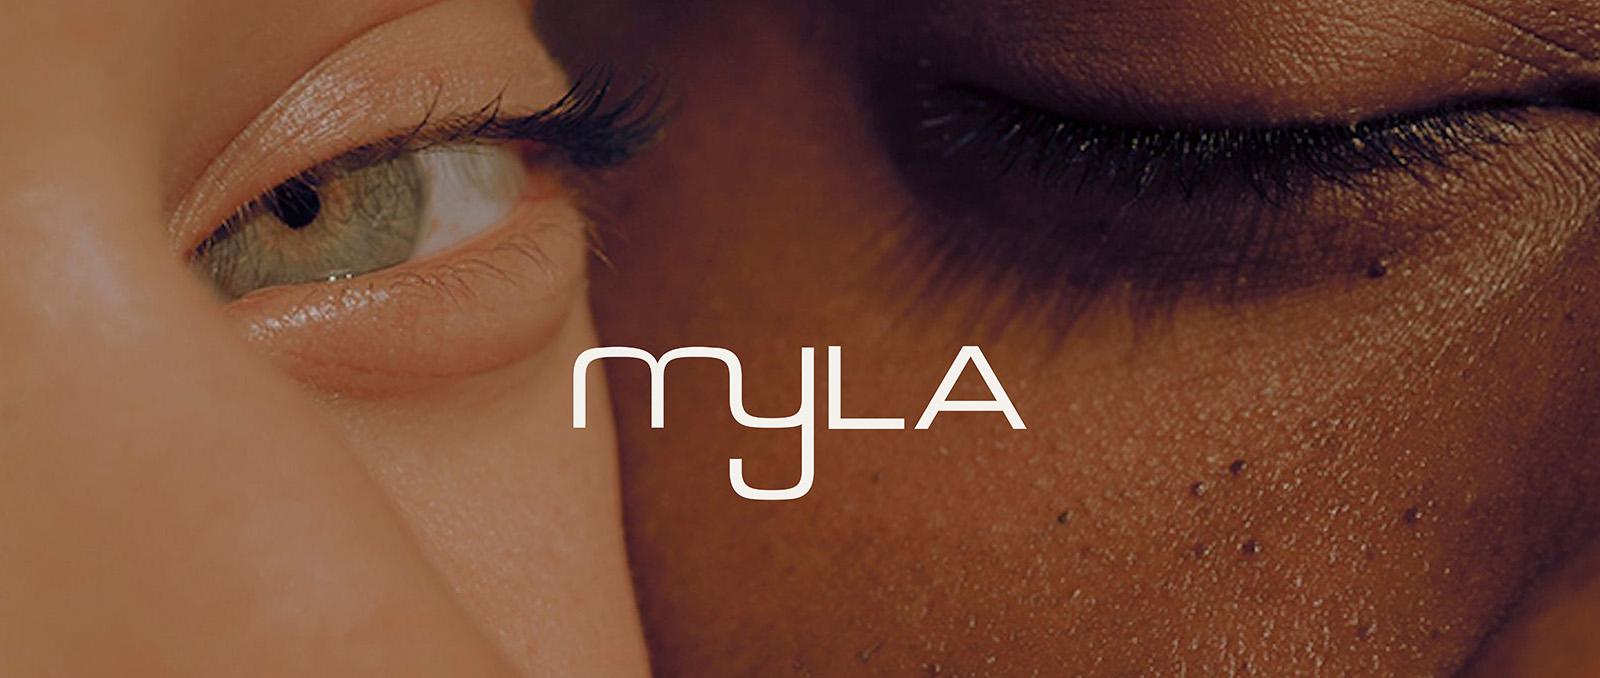 mlya-naturals-eyes-banner-1600×678